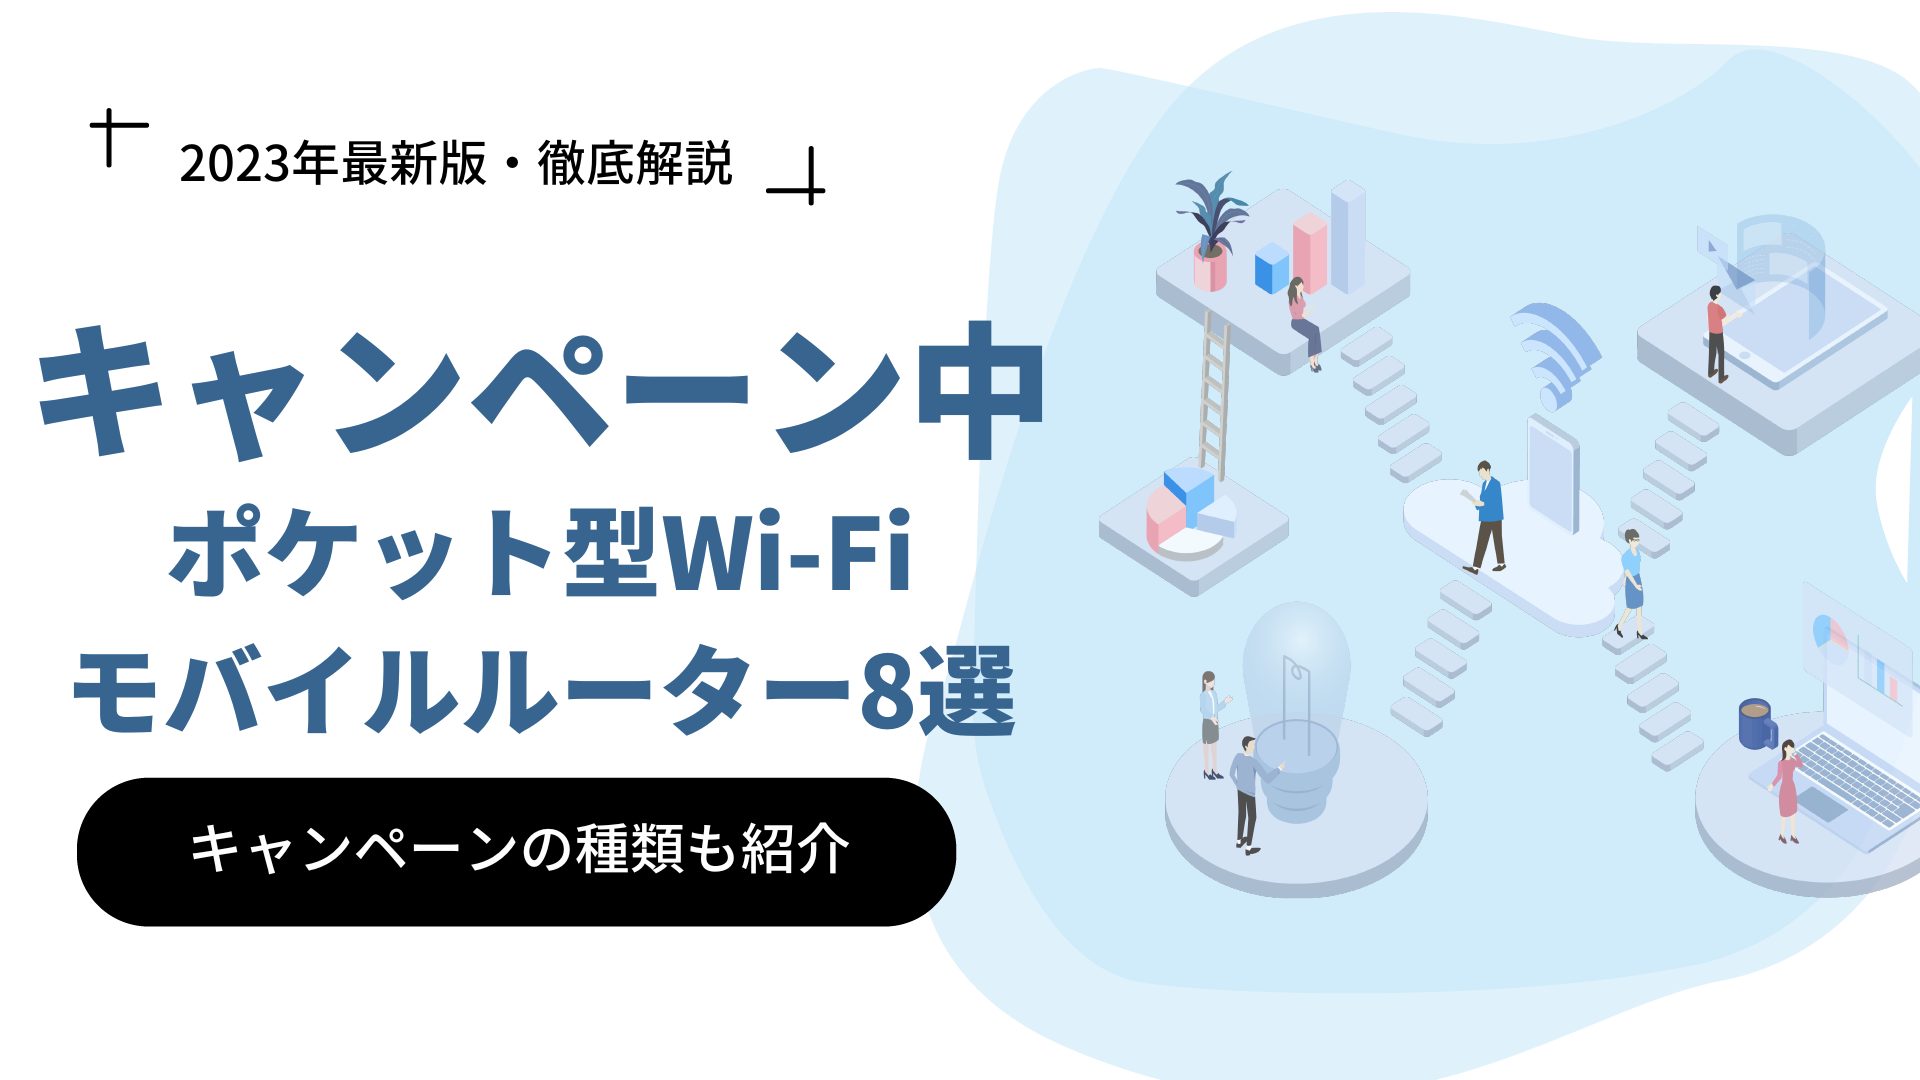 【2023年3月】キャンペーン実施中のポケット型WiFi・モバイルルーター8選